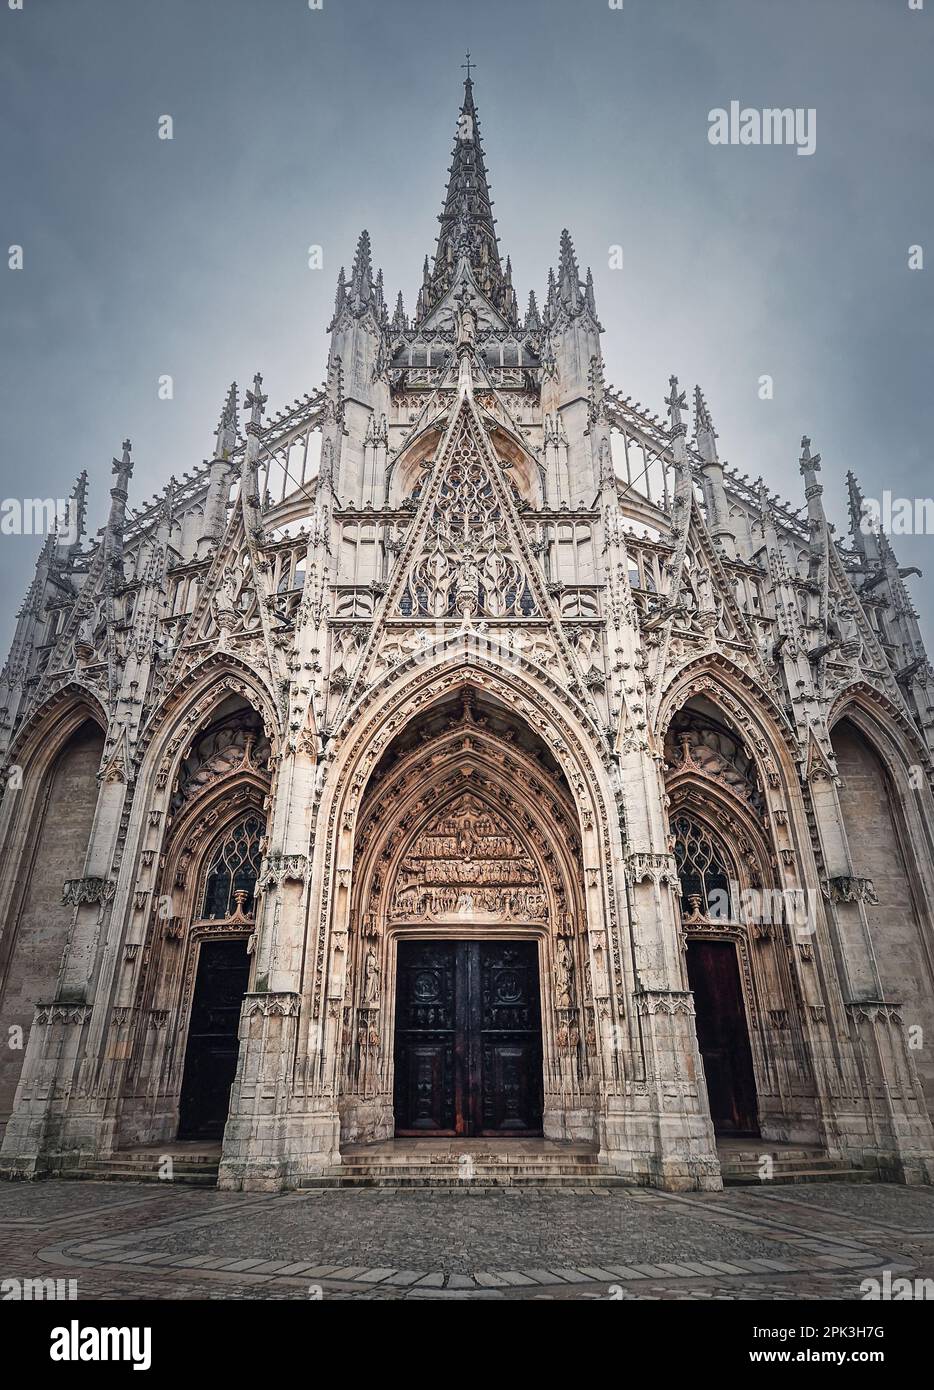 Außenfassade mit Blick auf die Kirche St. Maclou von Rouen in der Normandie, Frankreich. Extravaganter gotischer Architekturstil Stockfoto